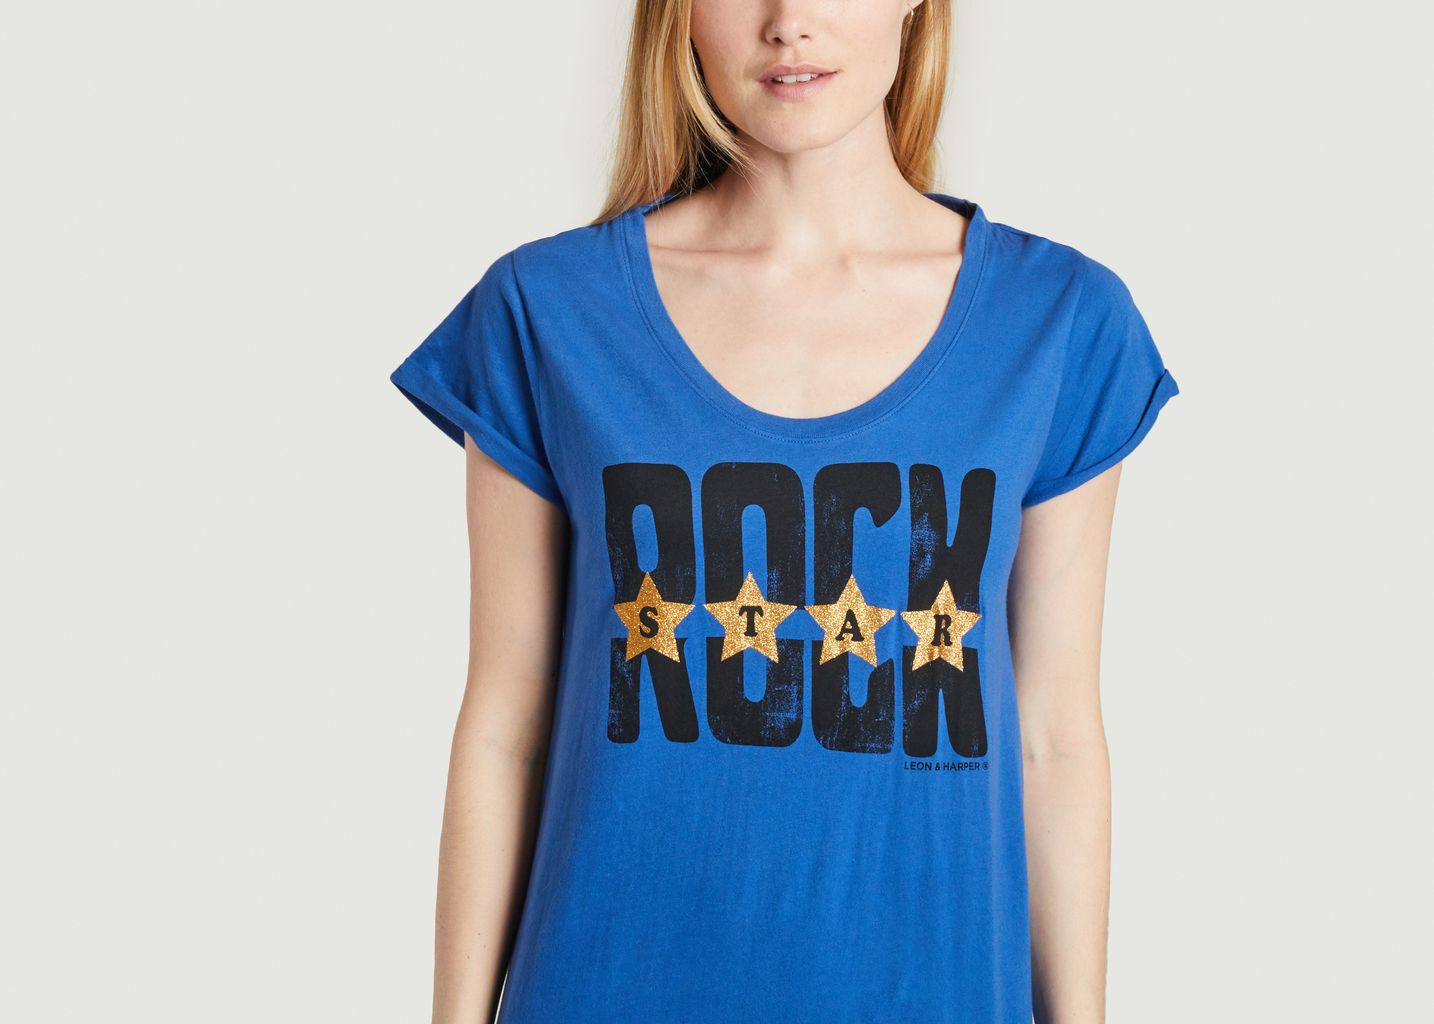 Langes T-Shirt Kleid mit Rock Reinette Stars Aufdruck - Leon & Harper